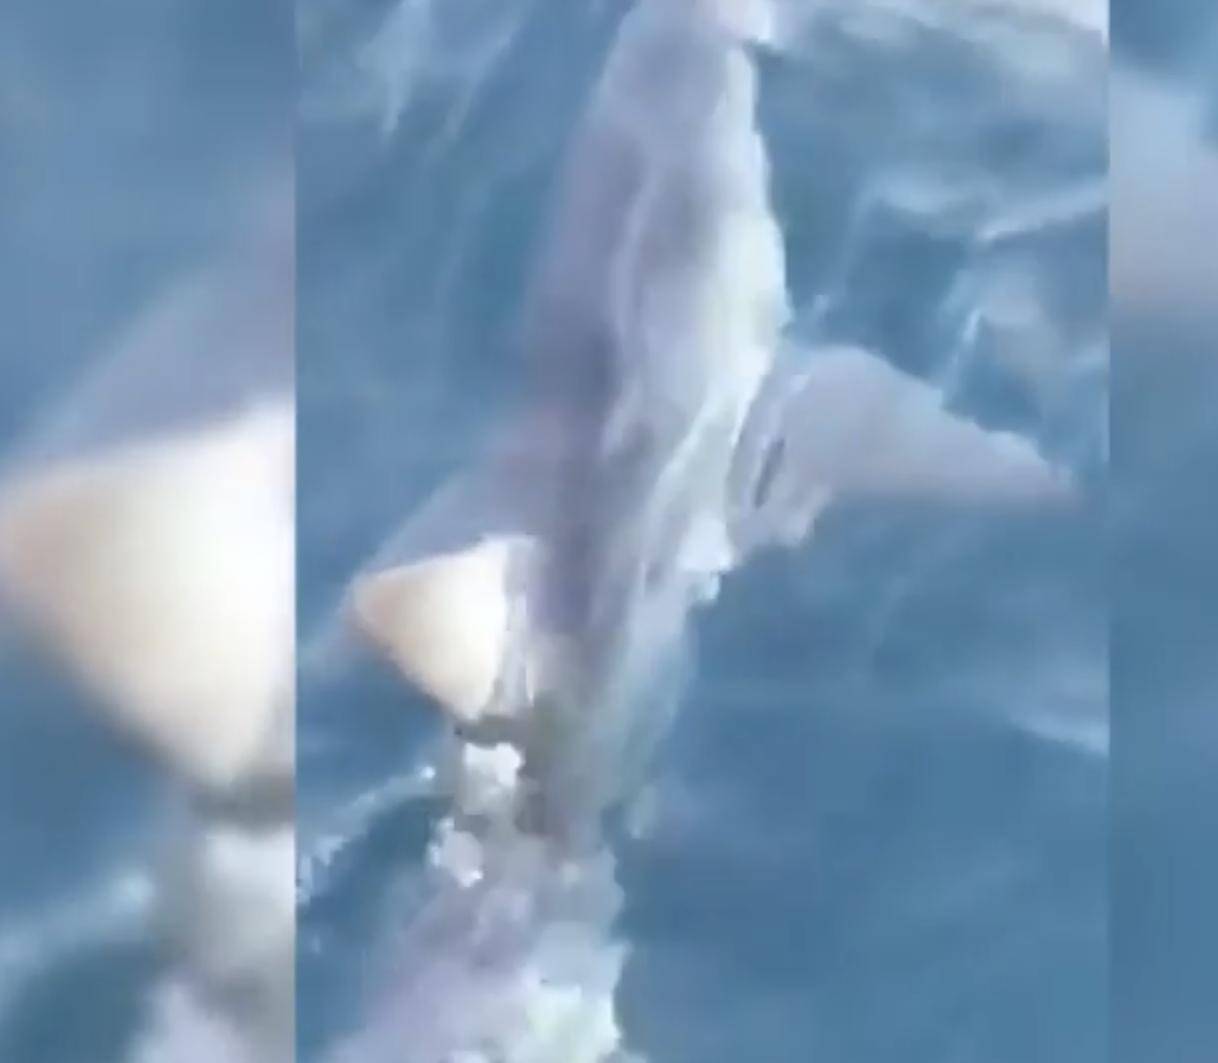 Kod Makarske snimili morskog psa kojeg tu nije bilo 40 godina